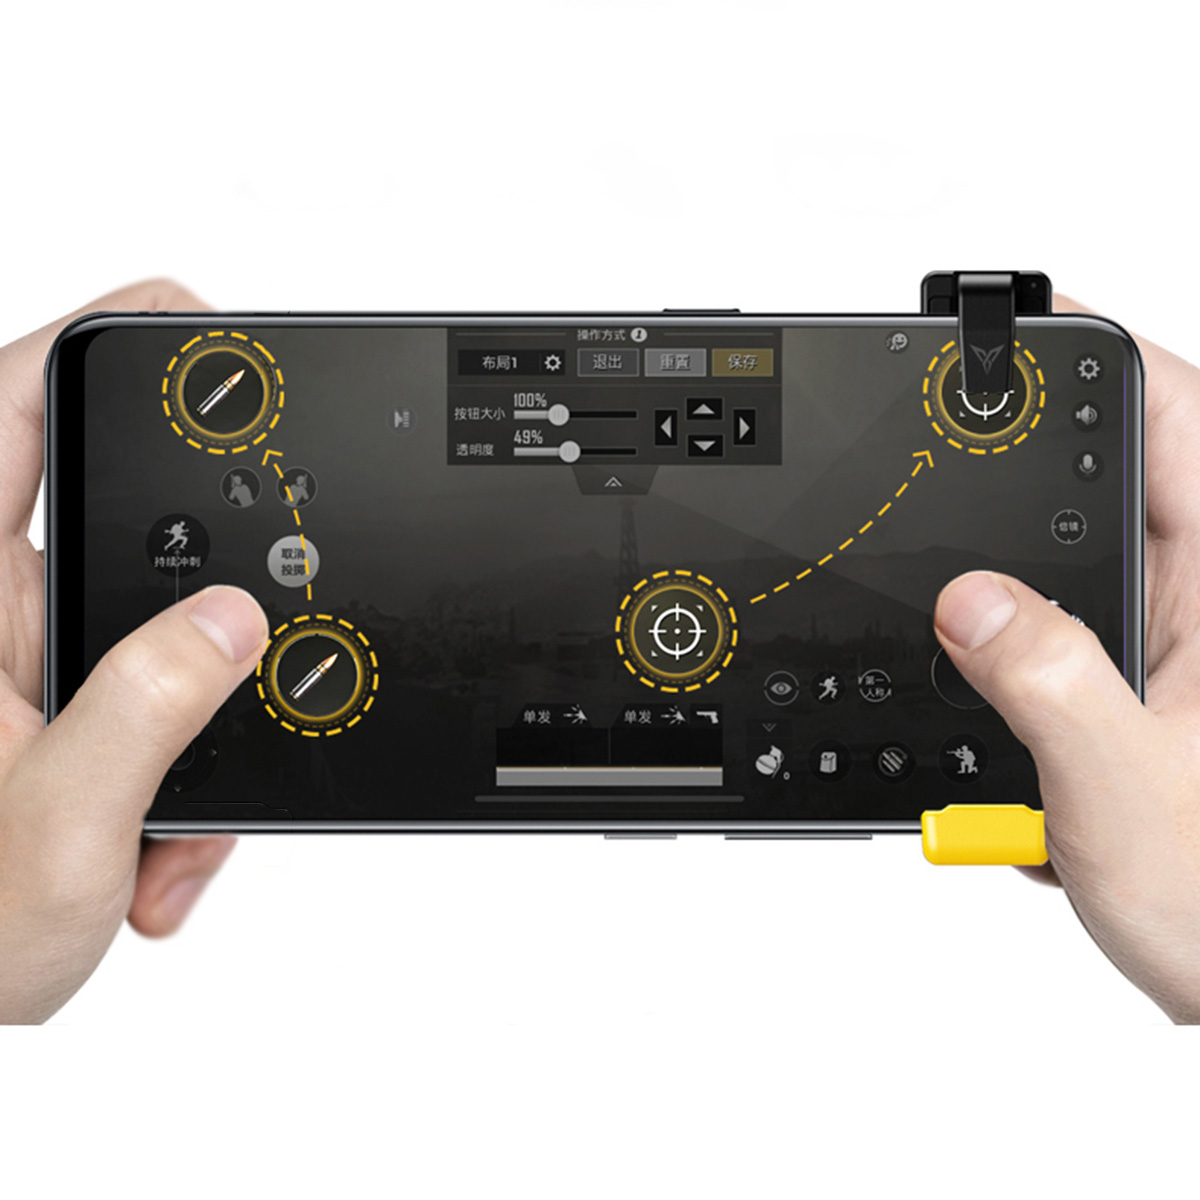 Игровой контроллер Flydigi Геймпад Trigger Shooter Joystick for PUBG Мобильная игра для iPhone Android